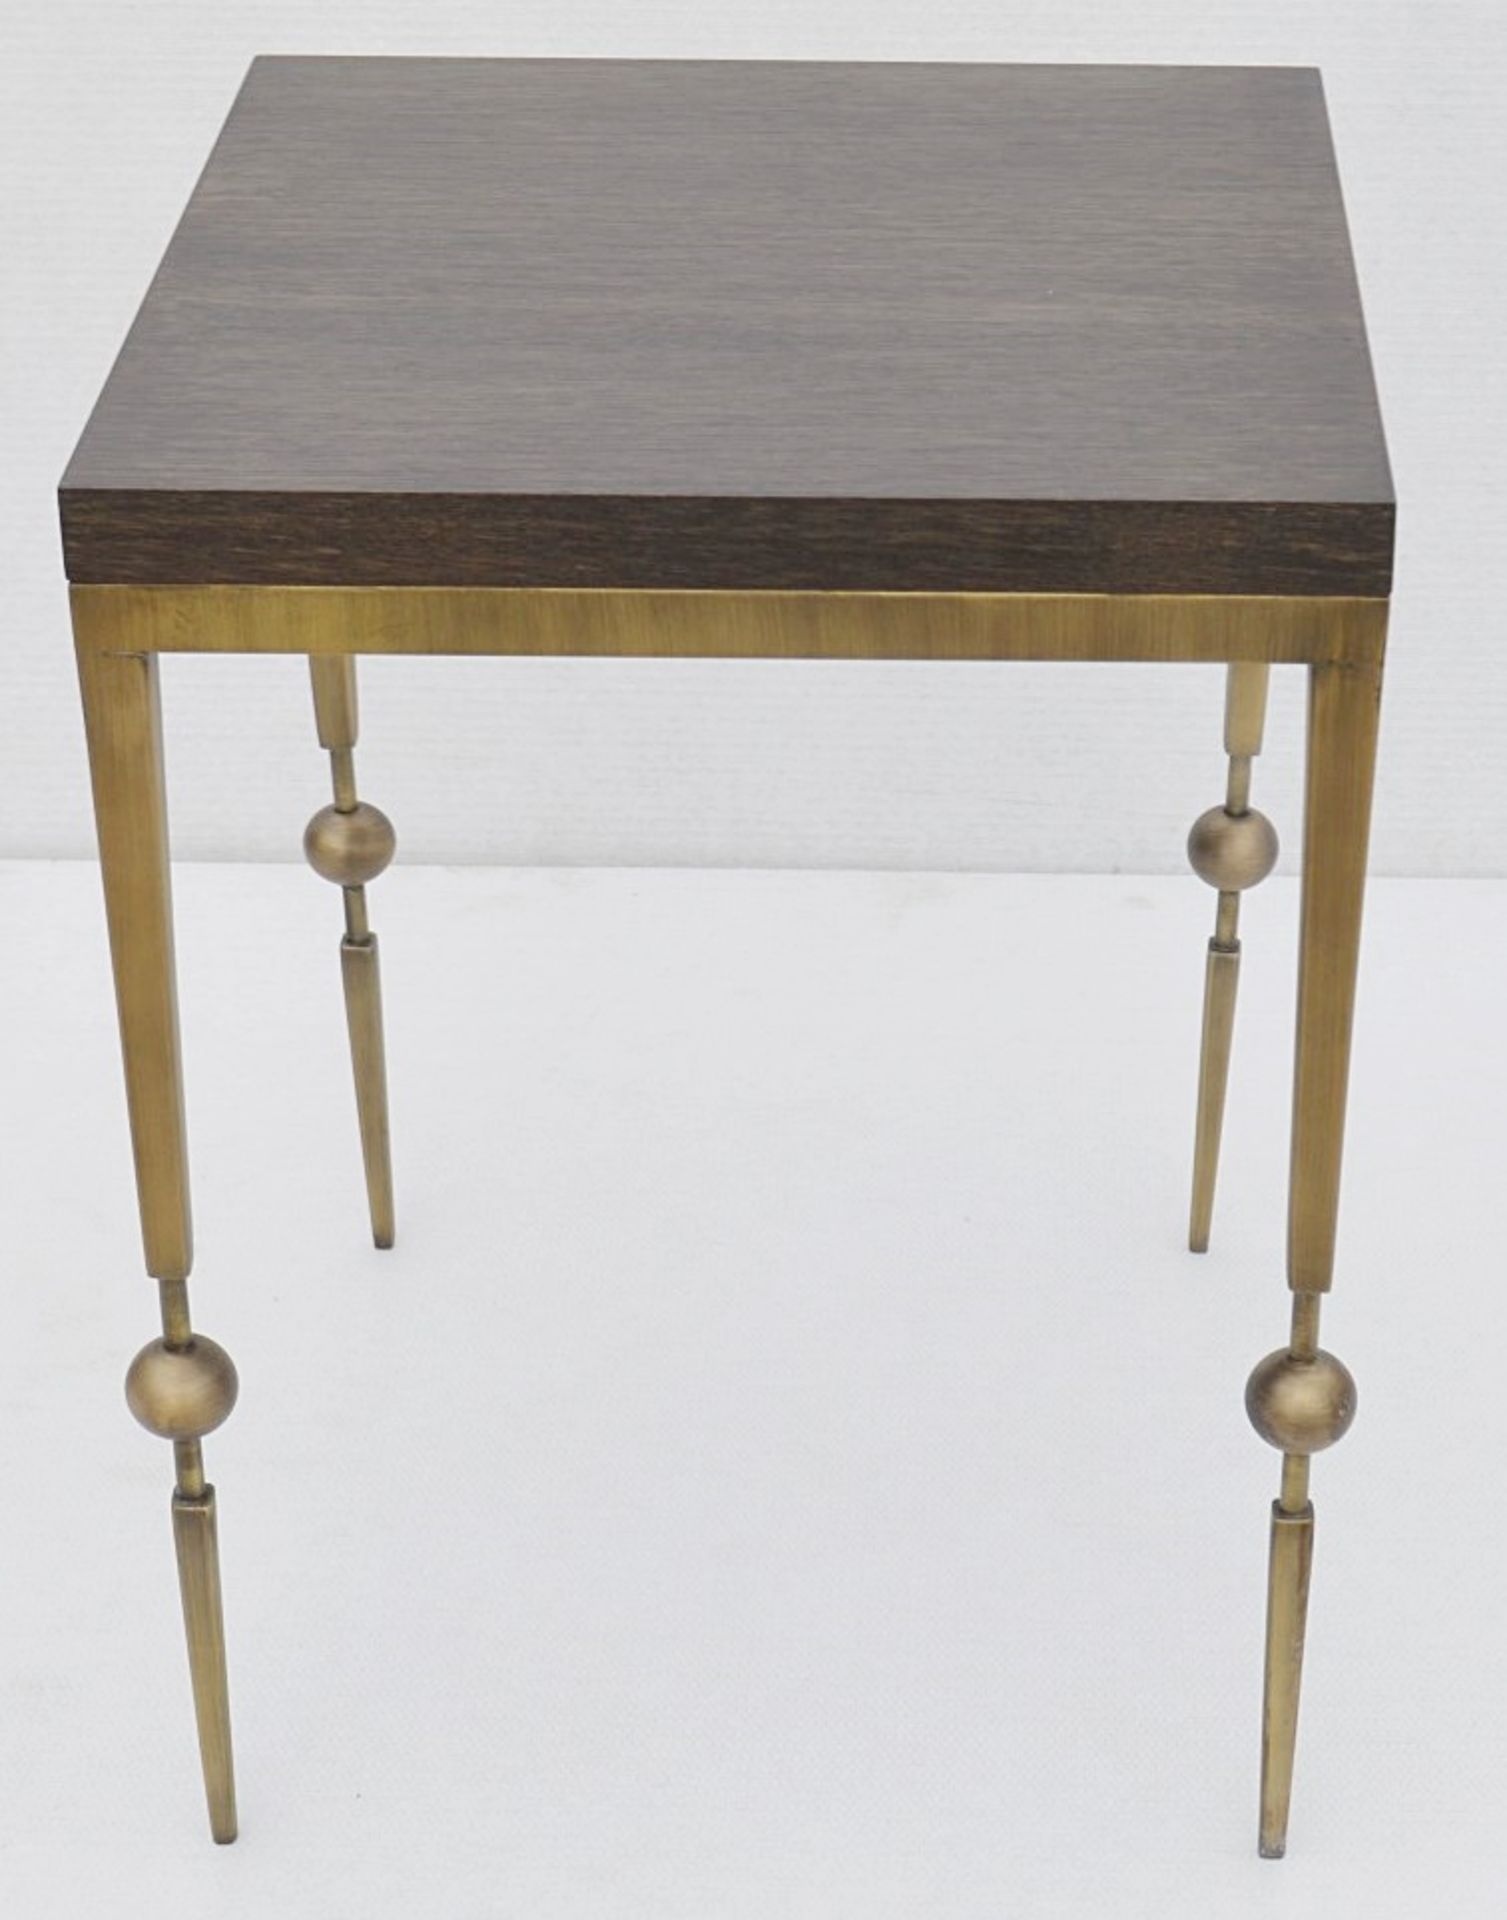 1 x JUSTIN VAN BREDA 'Sphere' Designer Occasional Table *NO RESERVE* Original RRP £1,200 - Image 6 of 7